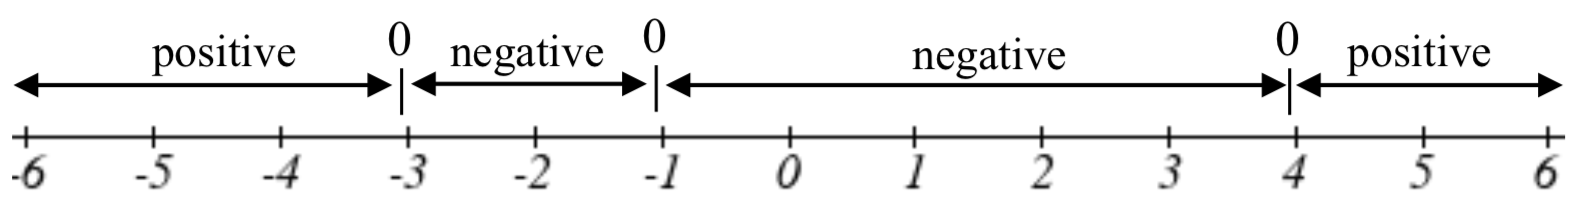 Una línea numérica dividida en 4 segmentos. El segmento a la izquierda de -3 está etiquetado como positivo. El segmento de -3 a -1 está etiquetado como negativo. El segmento de -1 a 4 se etiqueta negativo. El segmento a la derecha de 4 está etiquetado como positivo.